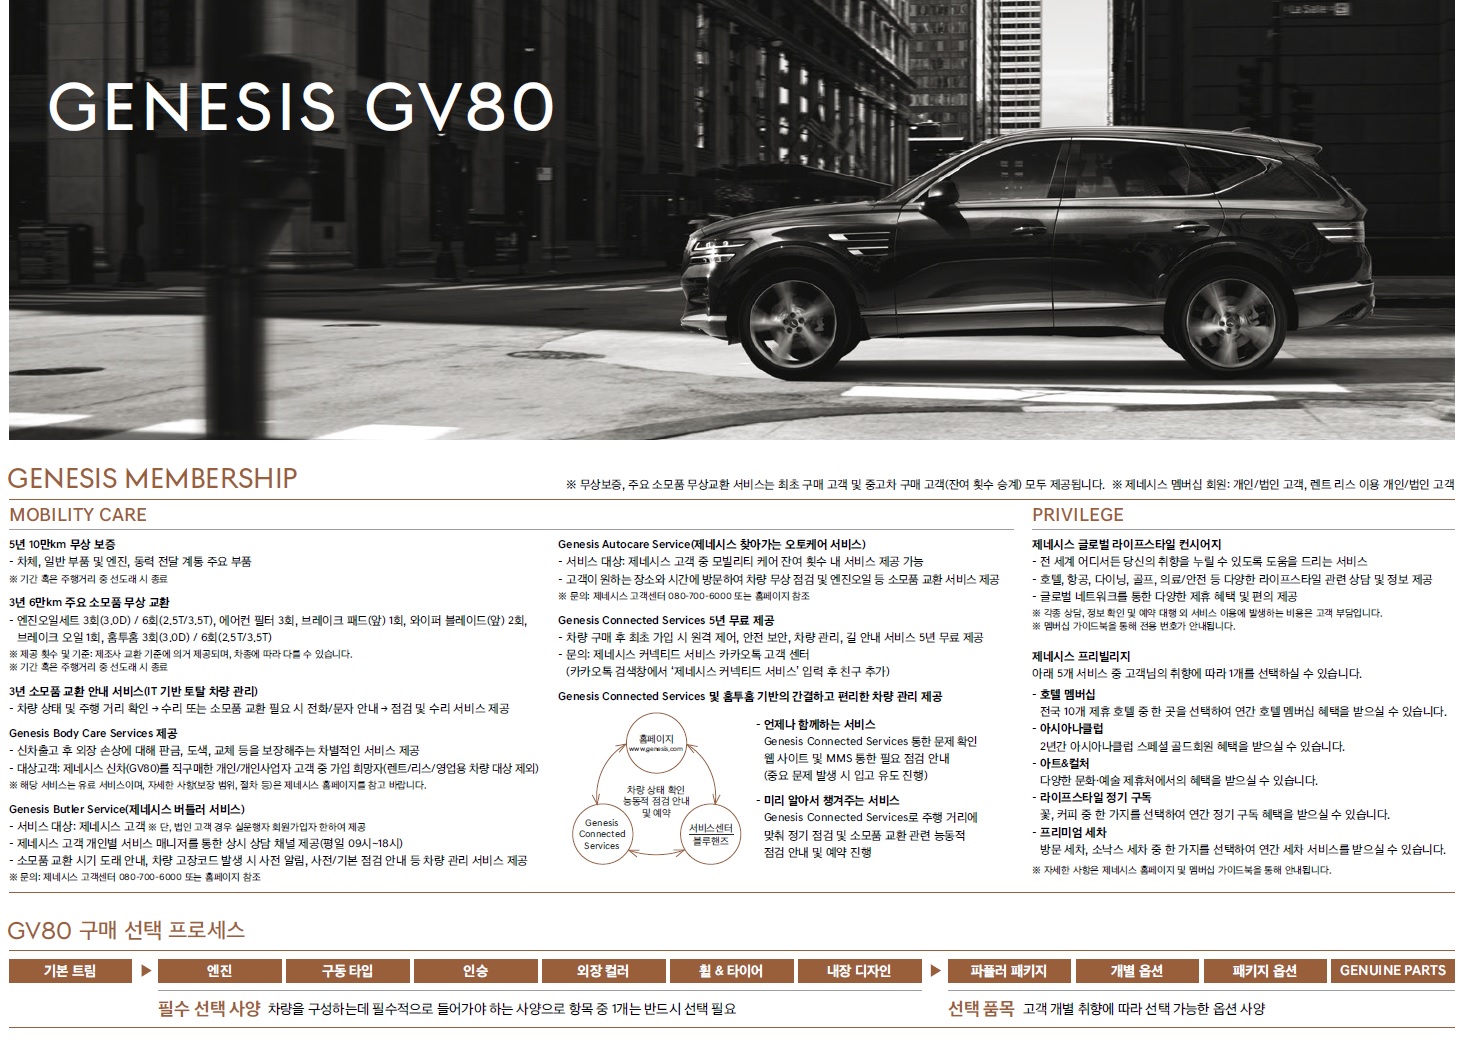 제네시스 GV80 가격표 - 2020년 4월 -1.jpg